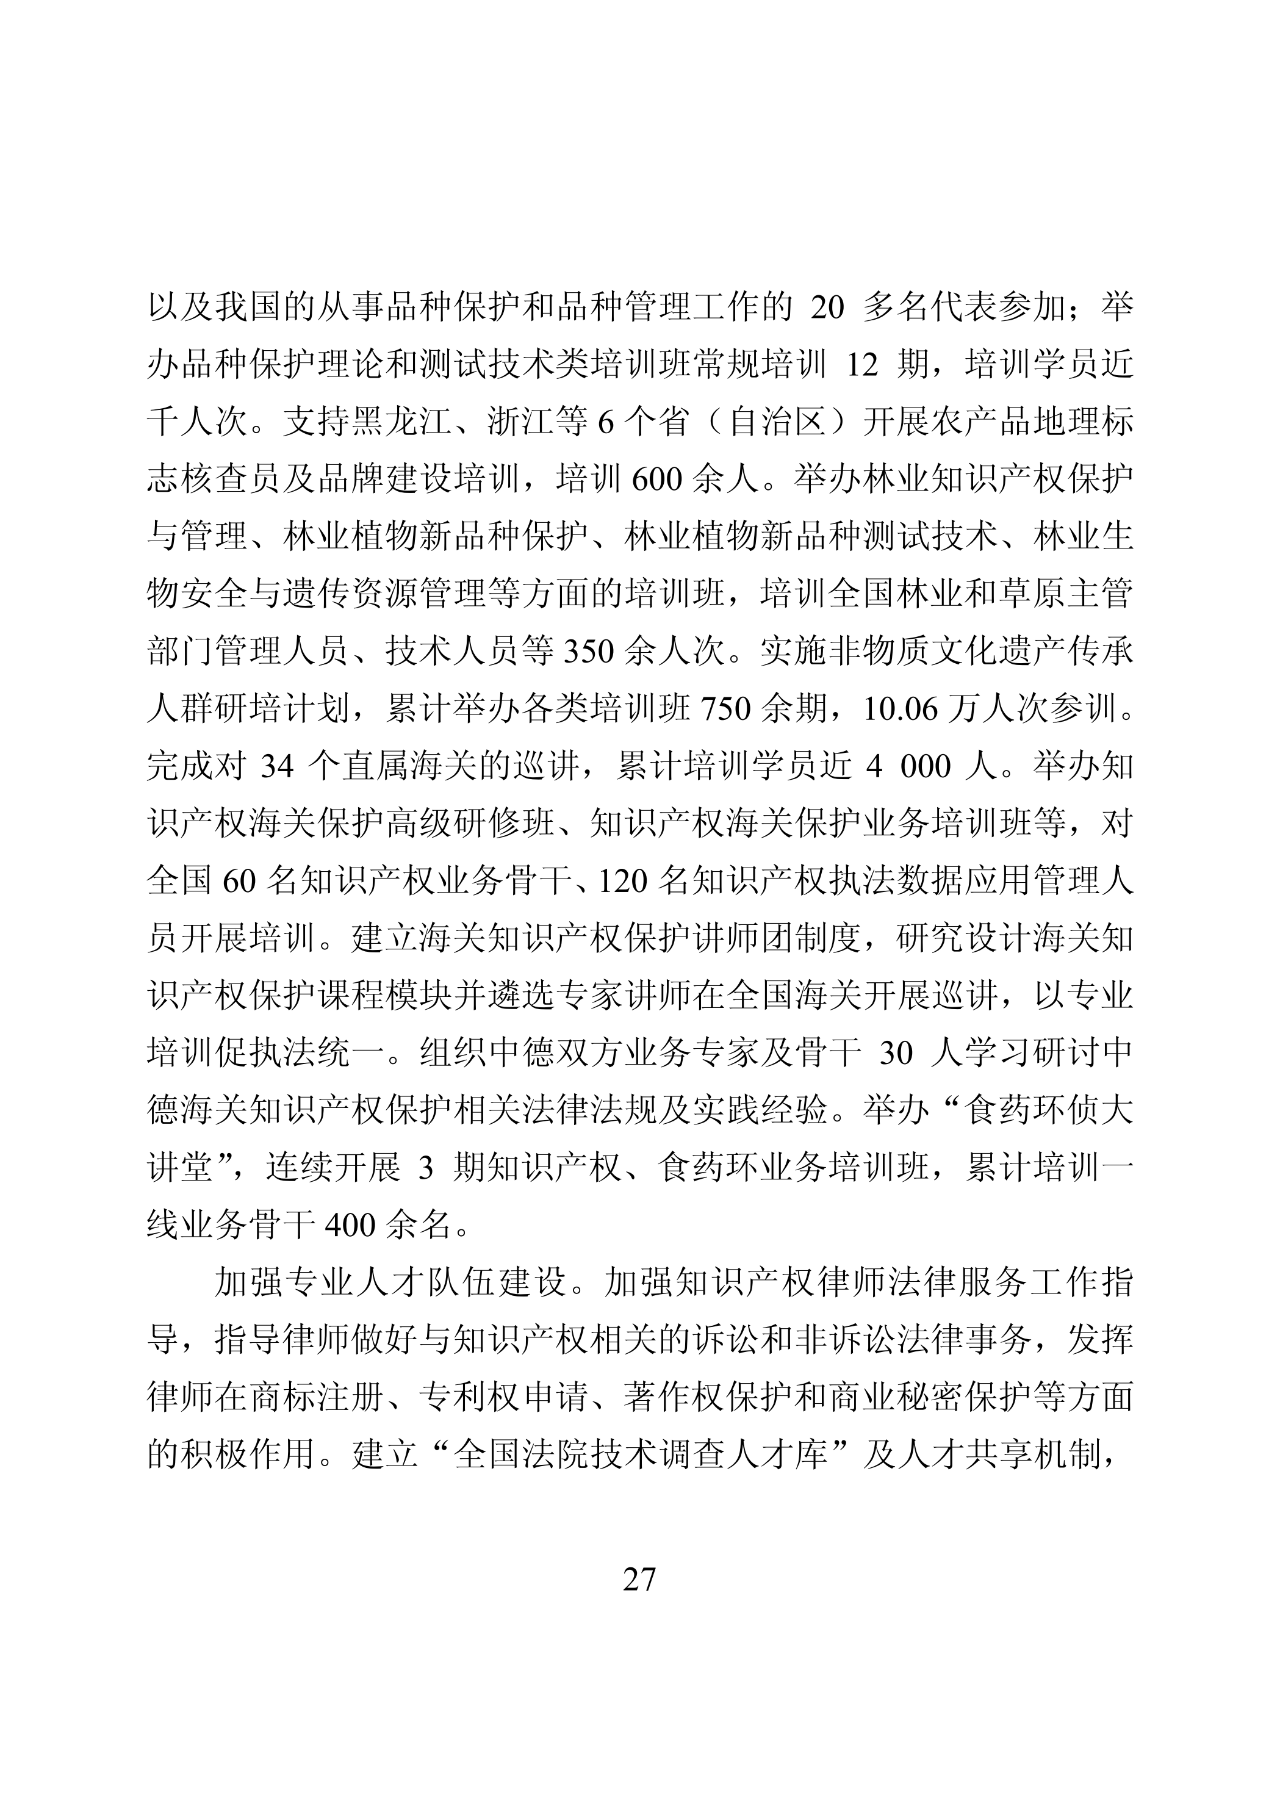 国知局：2019年中国知识产权保护状况（全文发布）